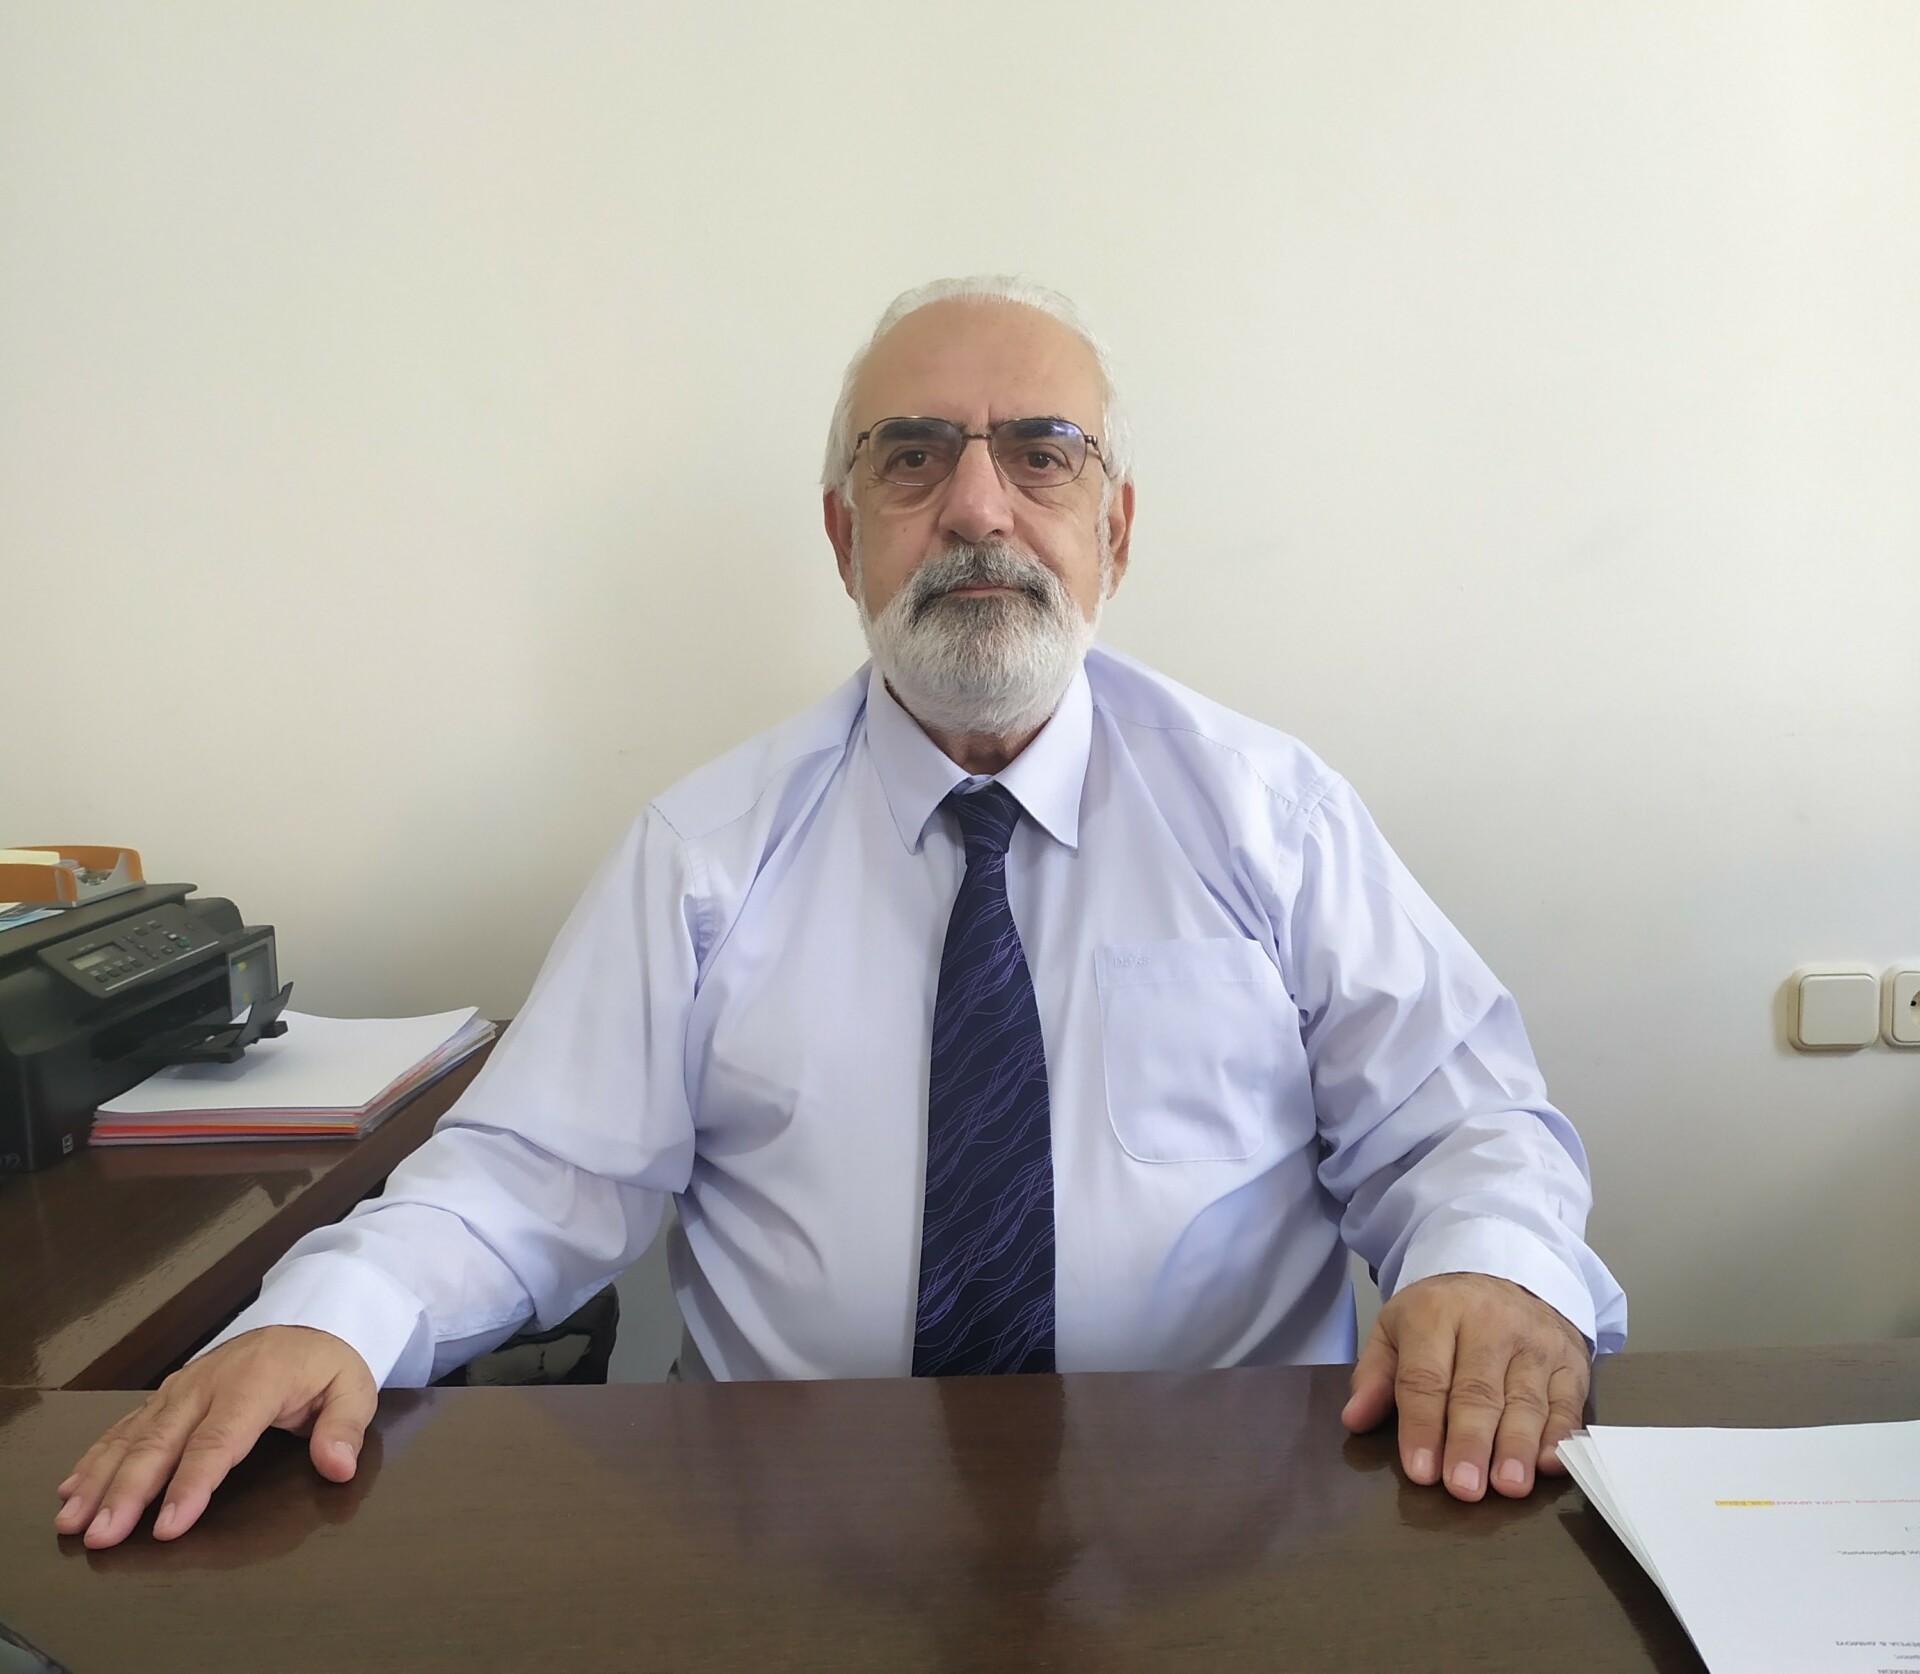 Ο Θεοκλής Βασιλειάδης, Πρόεδρος και Διευθύνων Σύμβουλος της εταιρείας «Specisoft Ανάπτυξη προγραμμάτων Η/Υ Α.Ε»